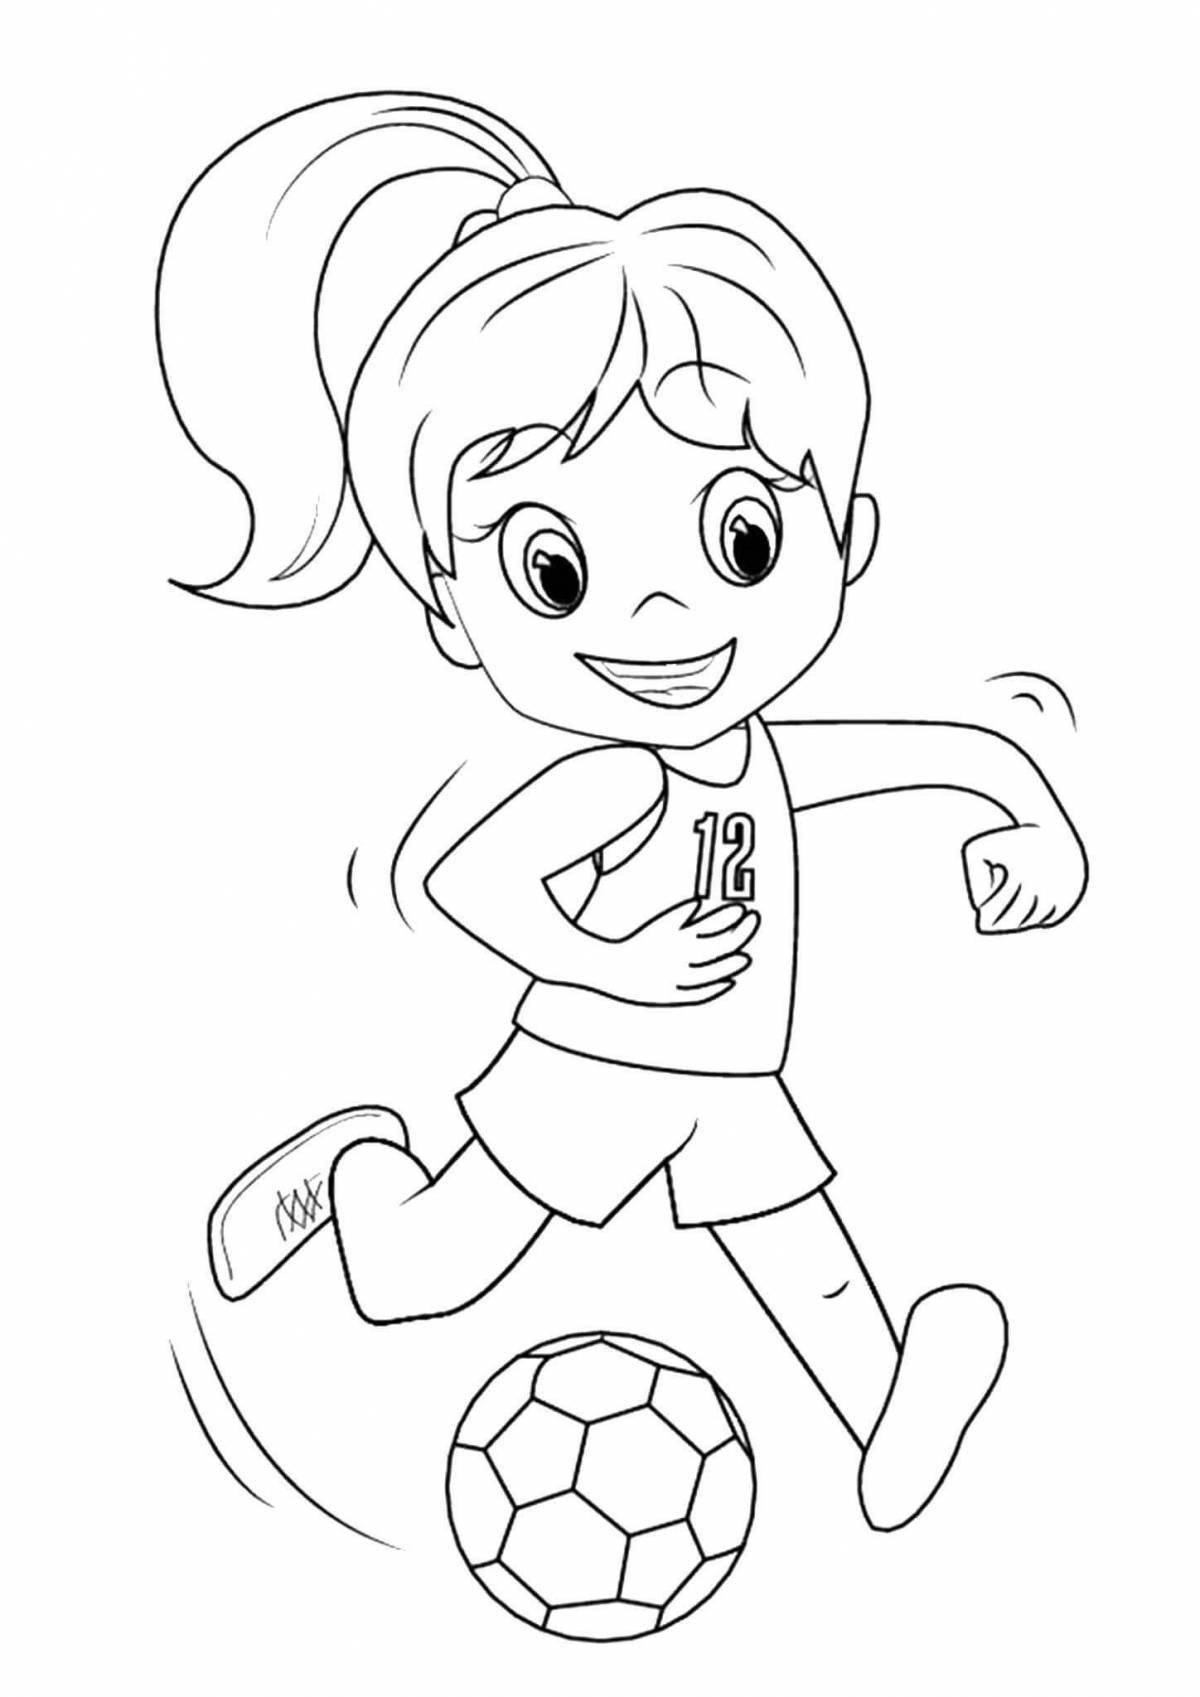 Радостная спортивная раскраска для детей 6-7 лет